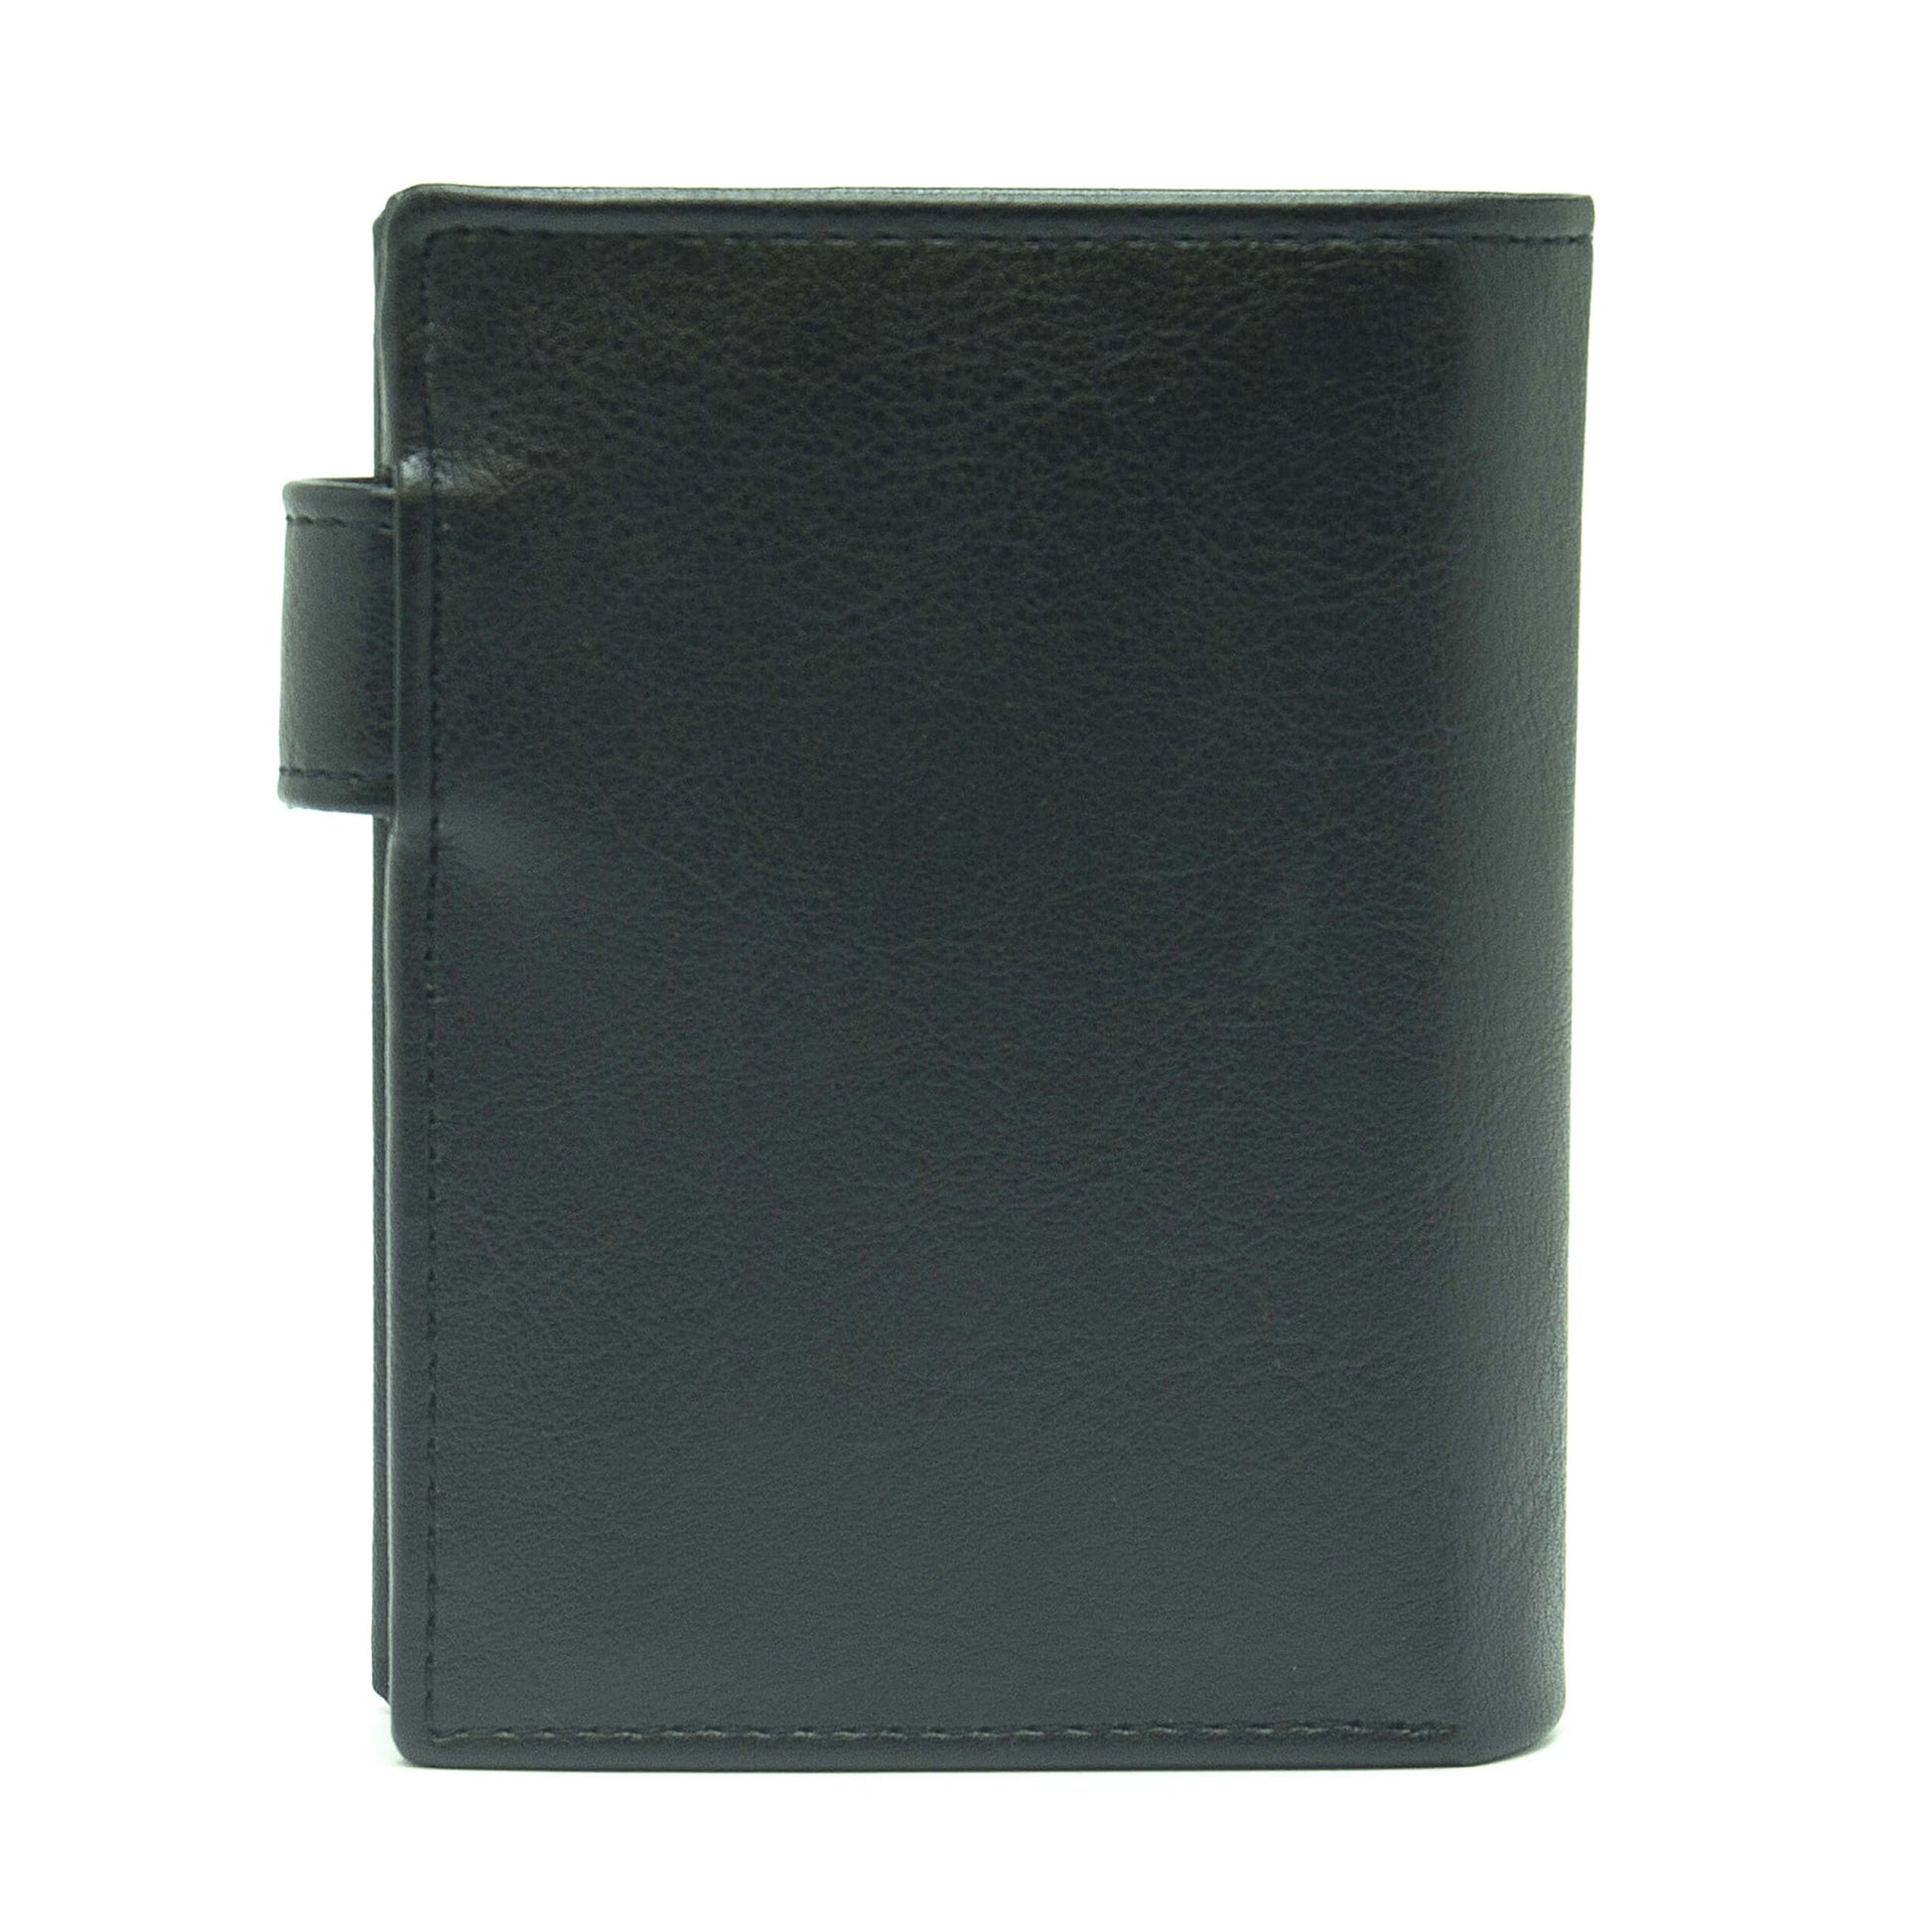 Denver - Black wallet with a coin pocket